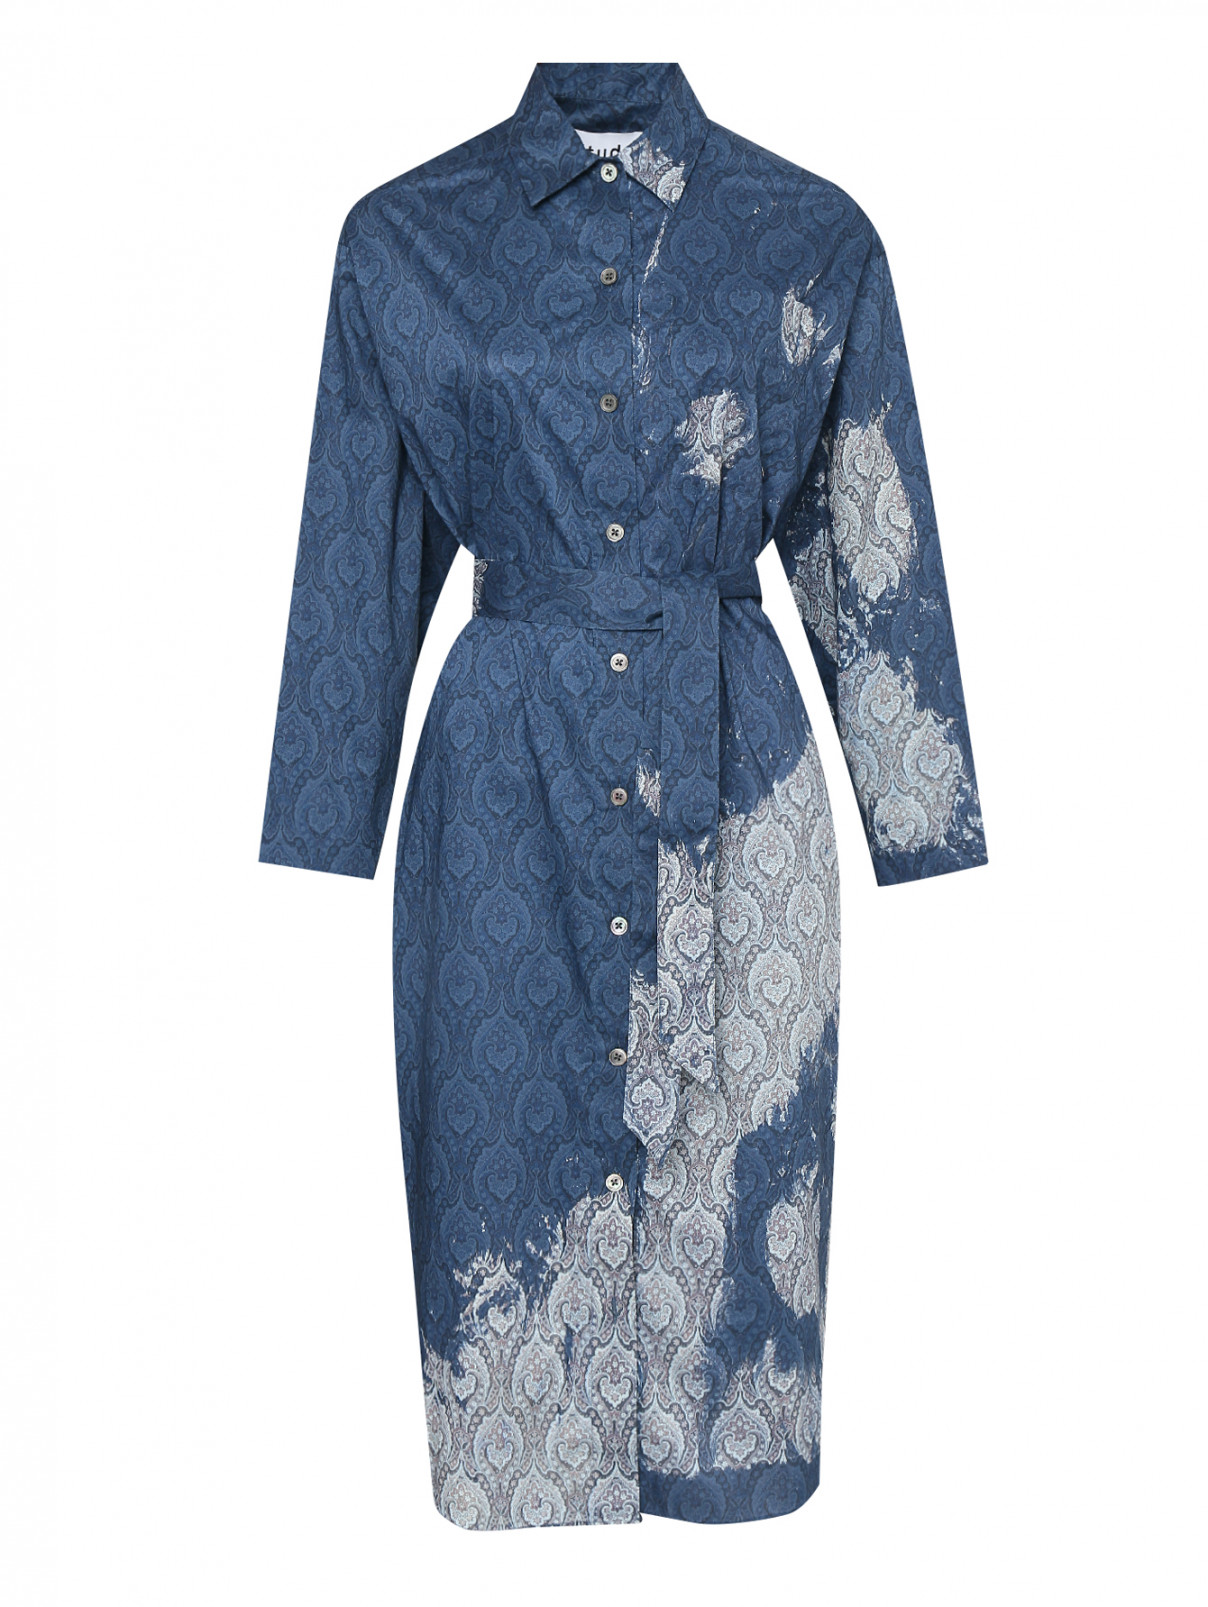 Платье хлопковое с узором пейсли Etudes  –  Общий вид  – Цвет:  Синий